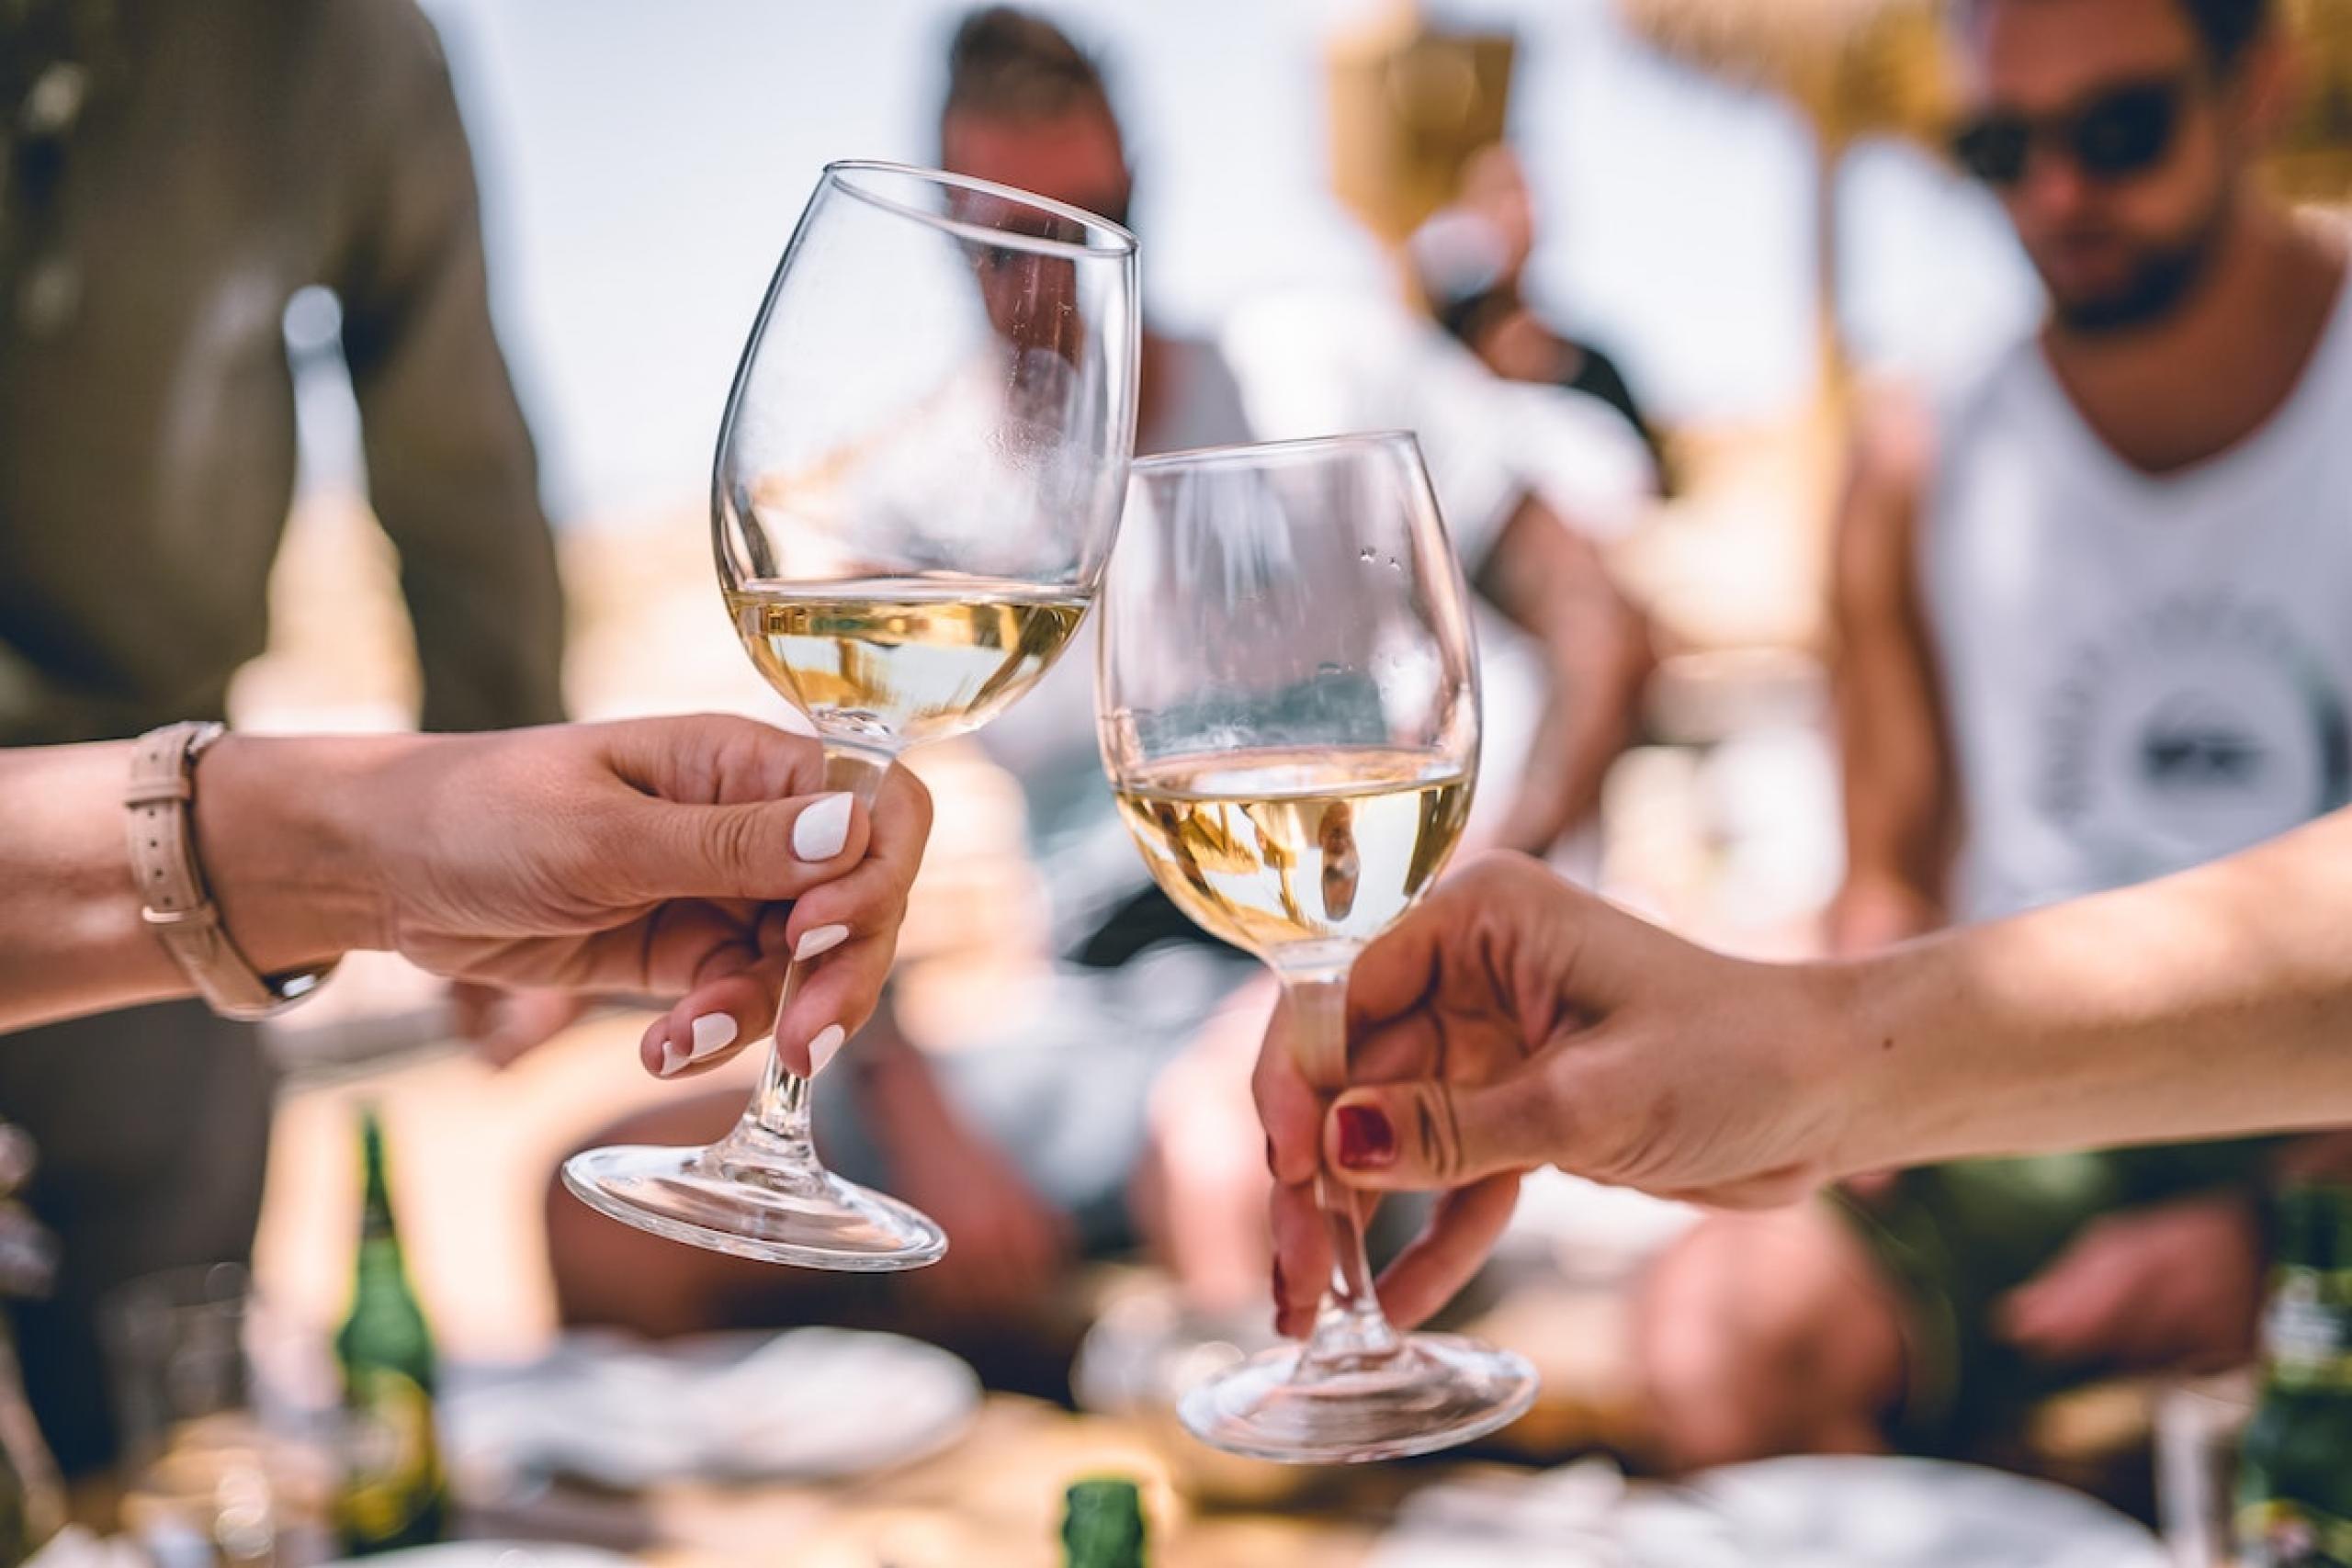 Průzkum ukázal, jak jsme na tom s pitím vína. Pijí více ženy nebo muži? |  Apetit Online